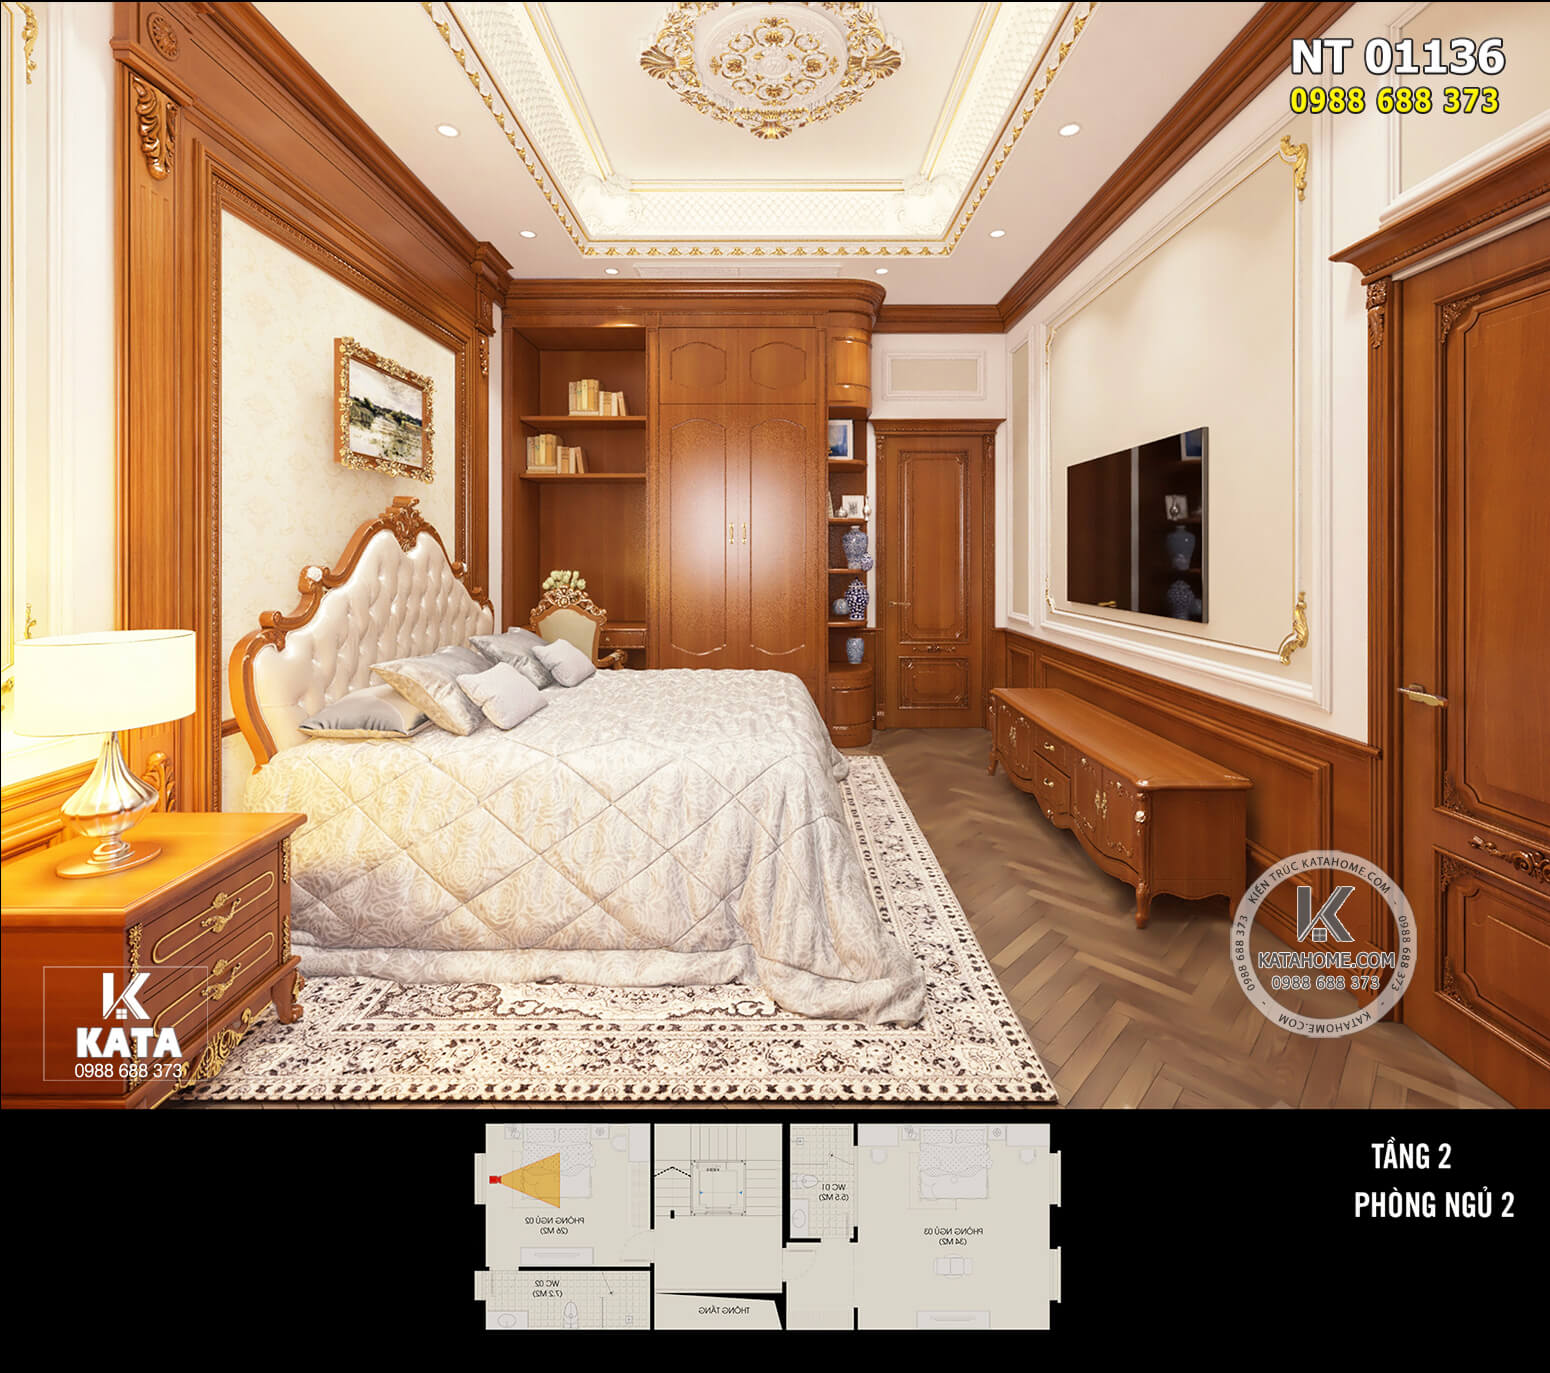 Không gian nội thất phòng ngủ tân cổ điển kết hợp giữa gỗ tự nhiên cao cấp và hệ phào chỉ tinh tế